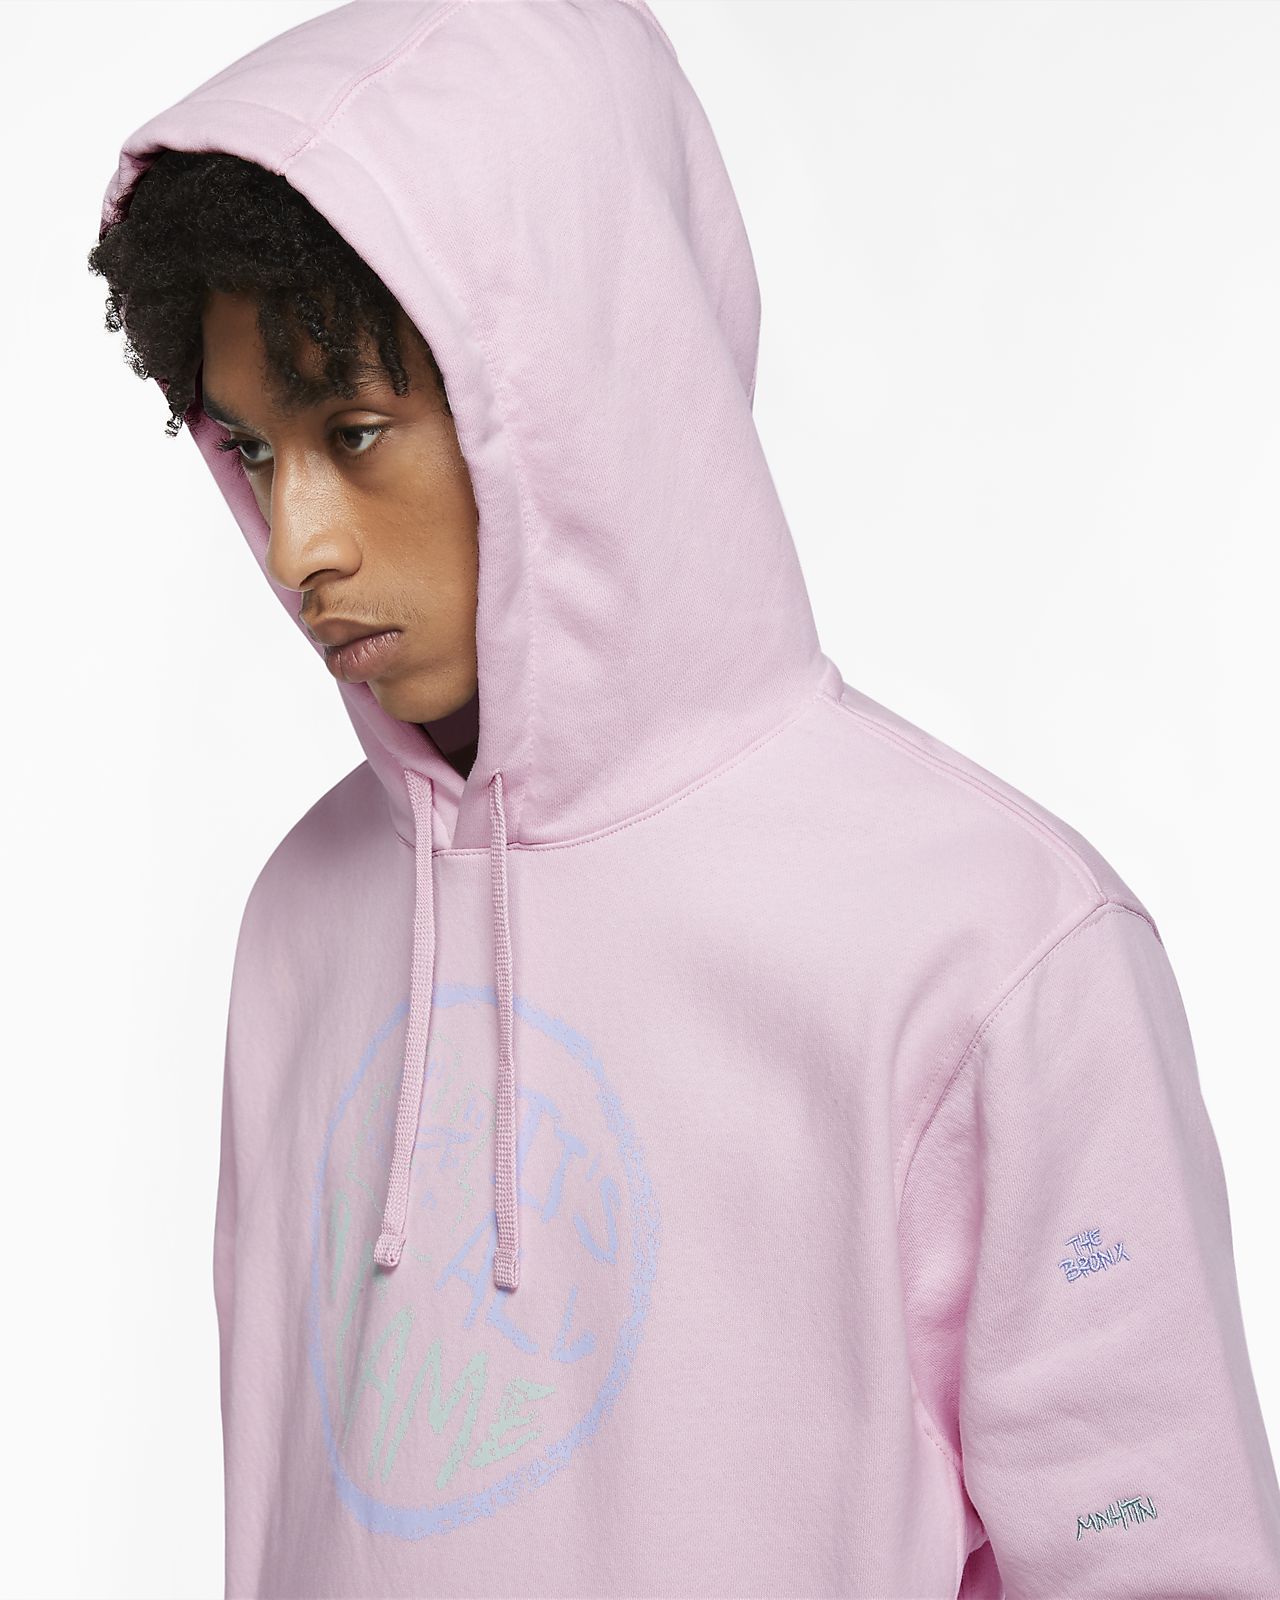 nike sportswear hoodie pink